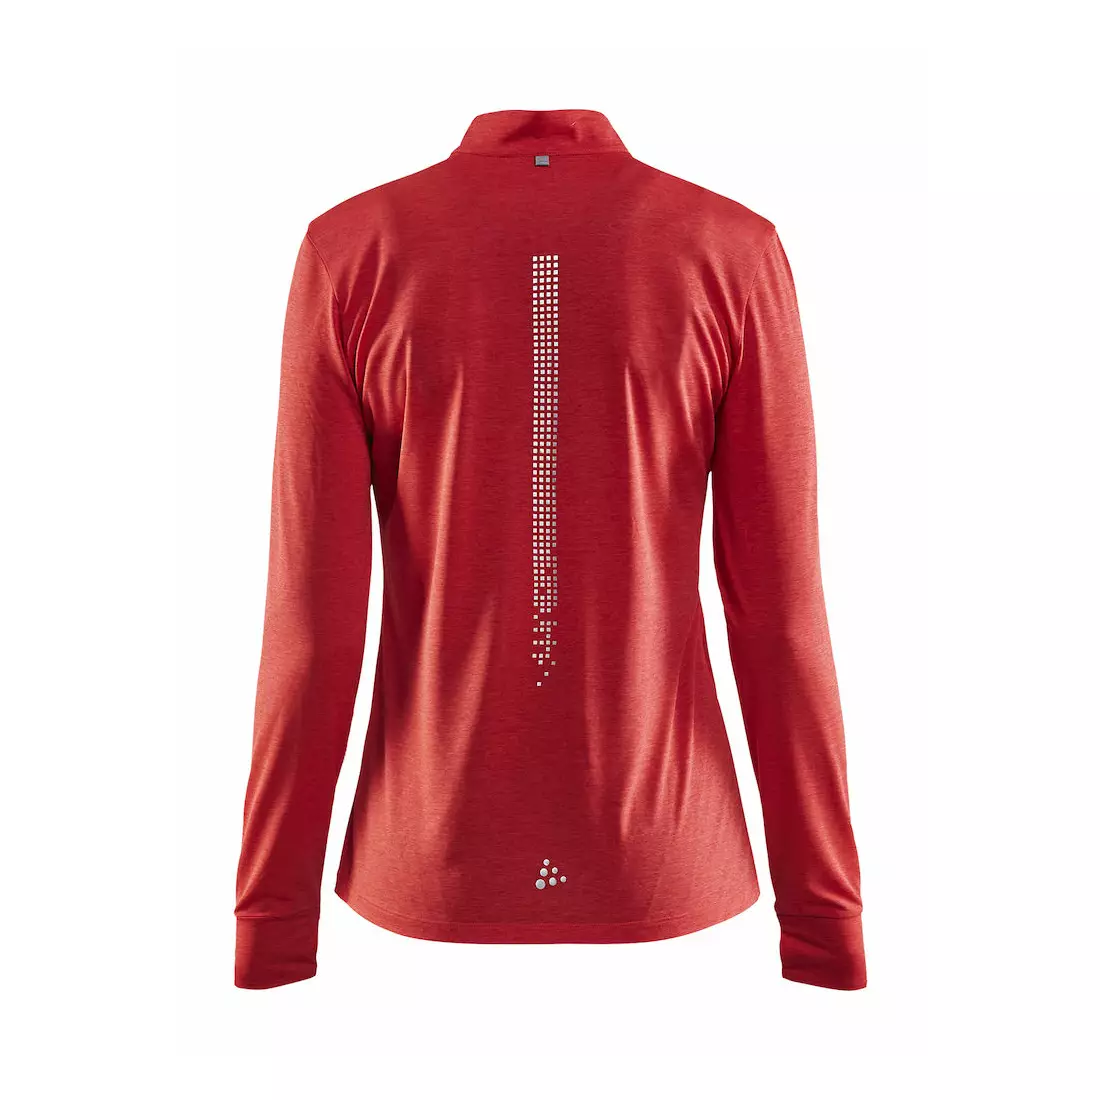 CRAFT REFLECTIVE ZIP 1905499-452000 dámské běžecké tričko s dlouhým rukávem růžové